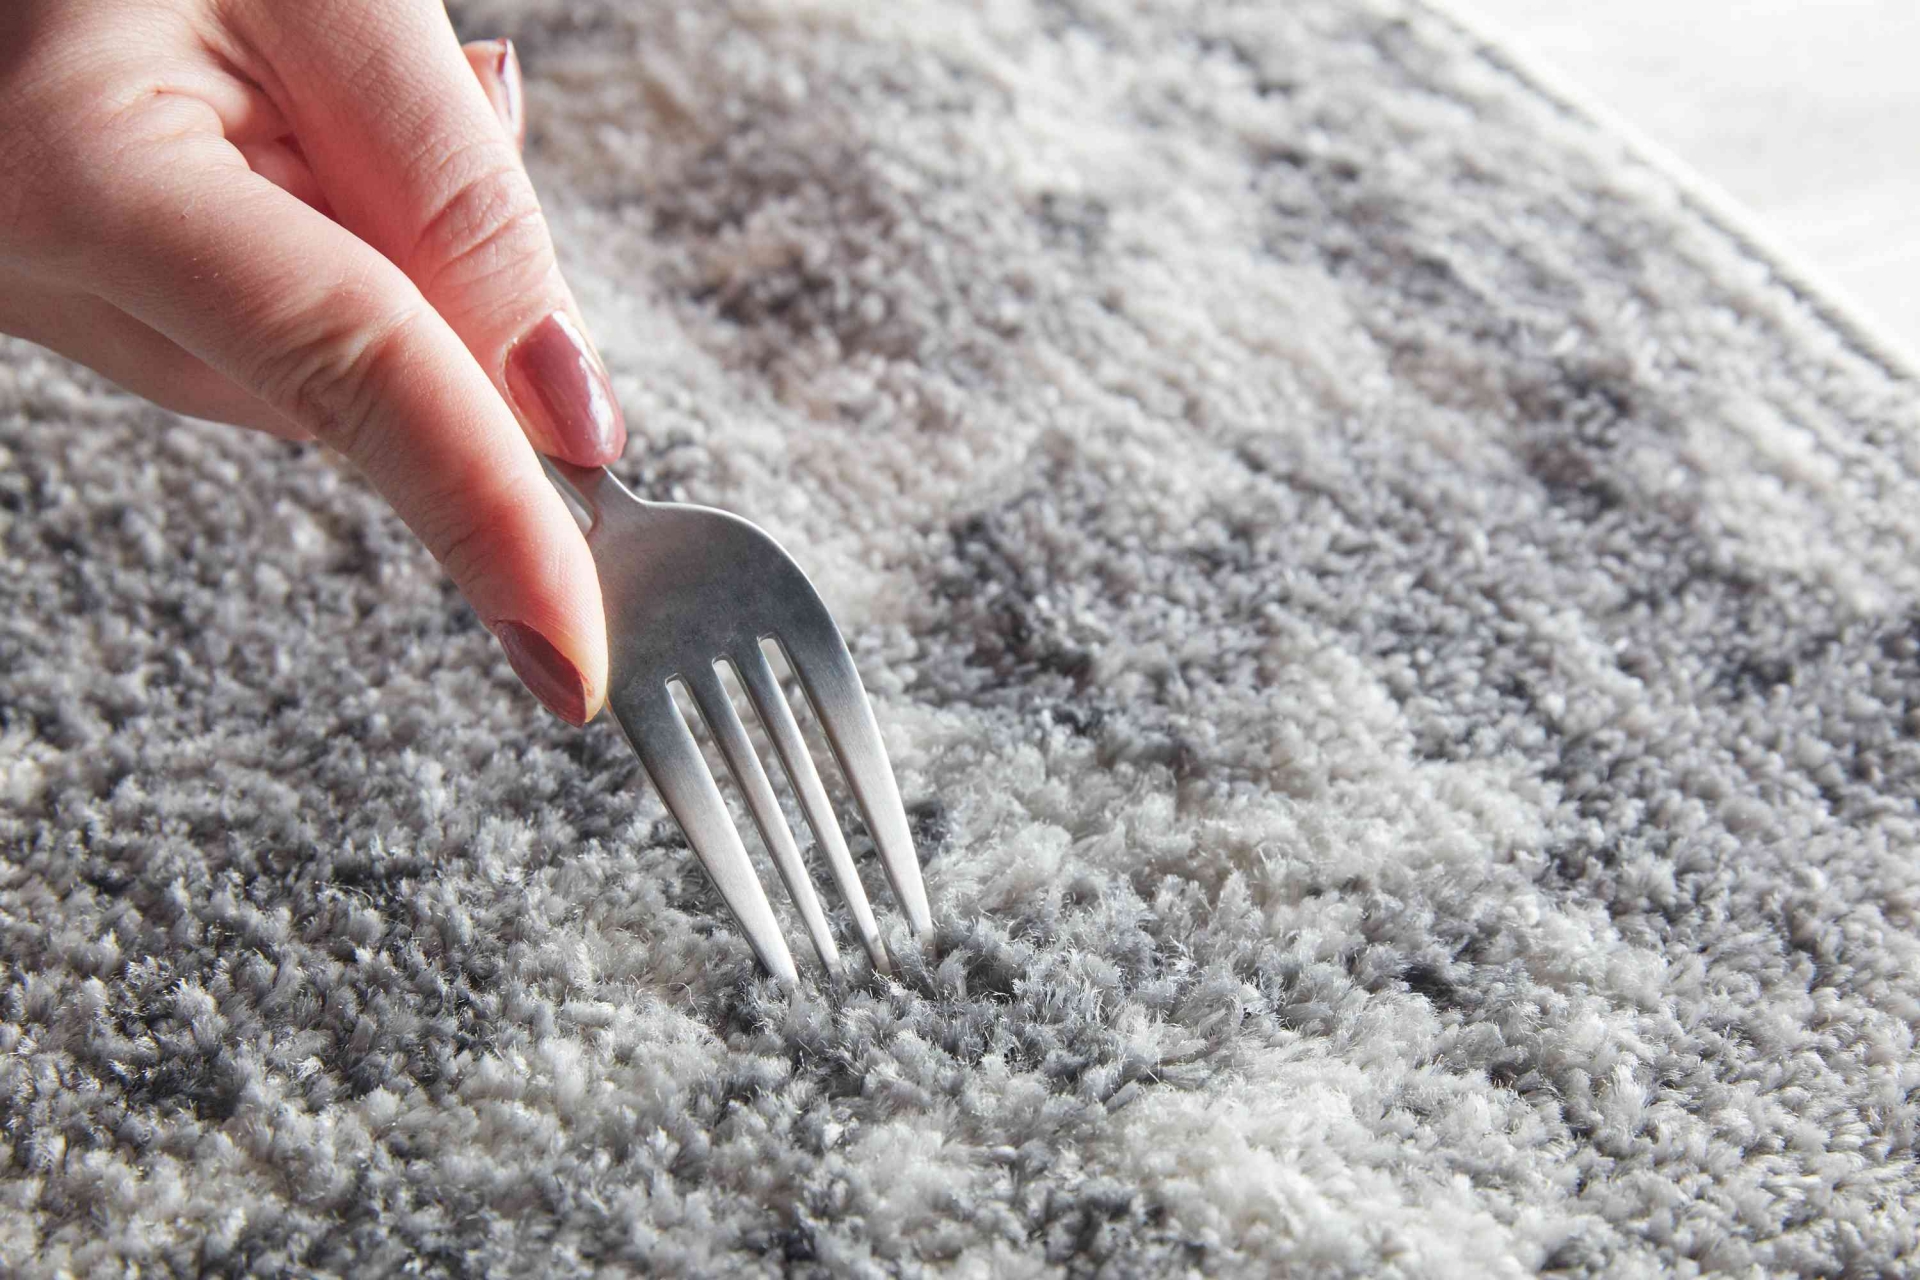 Dùng ngón tay hoặc chiếc nĩa để làm tơi sợi trên tấm thảm,